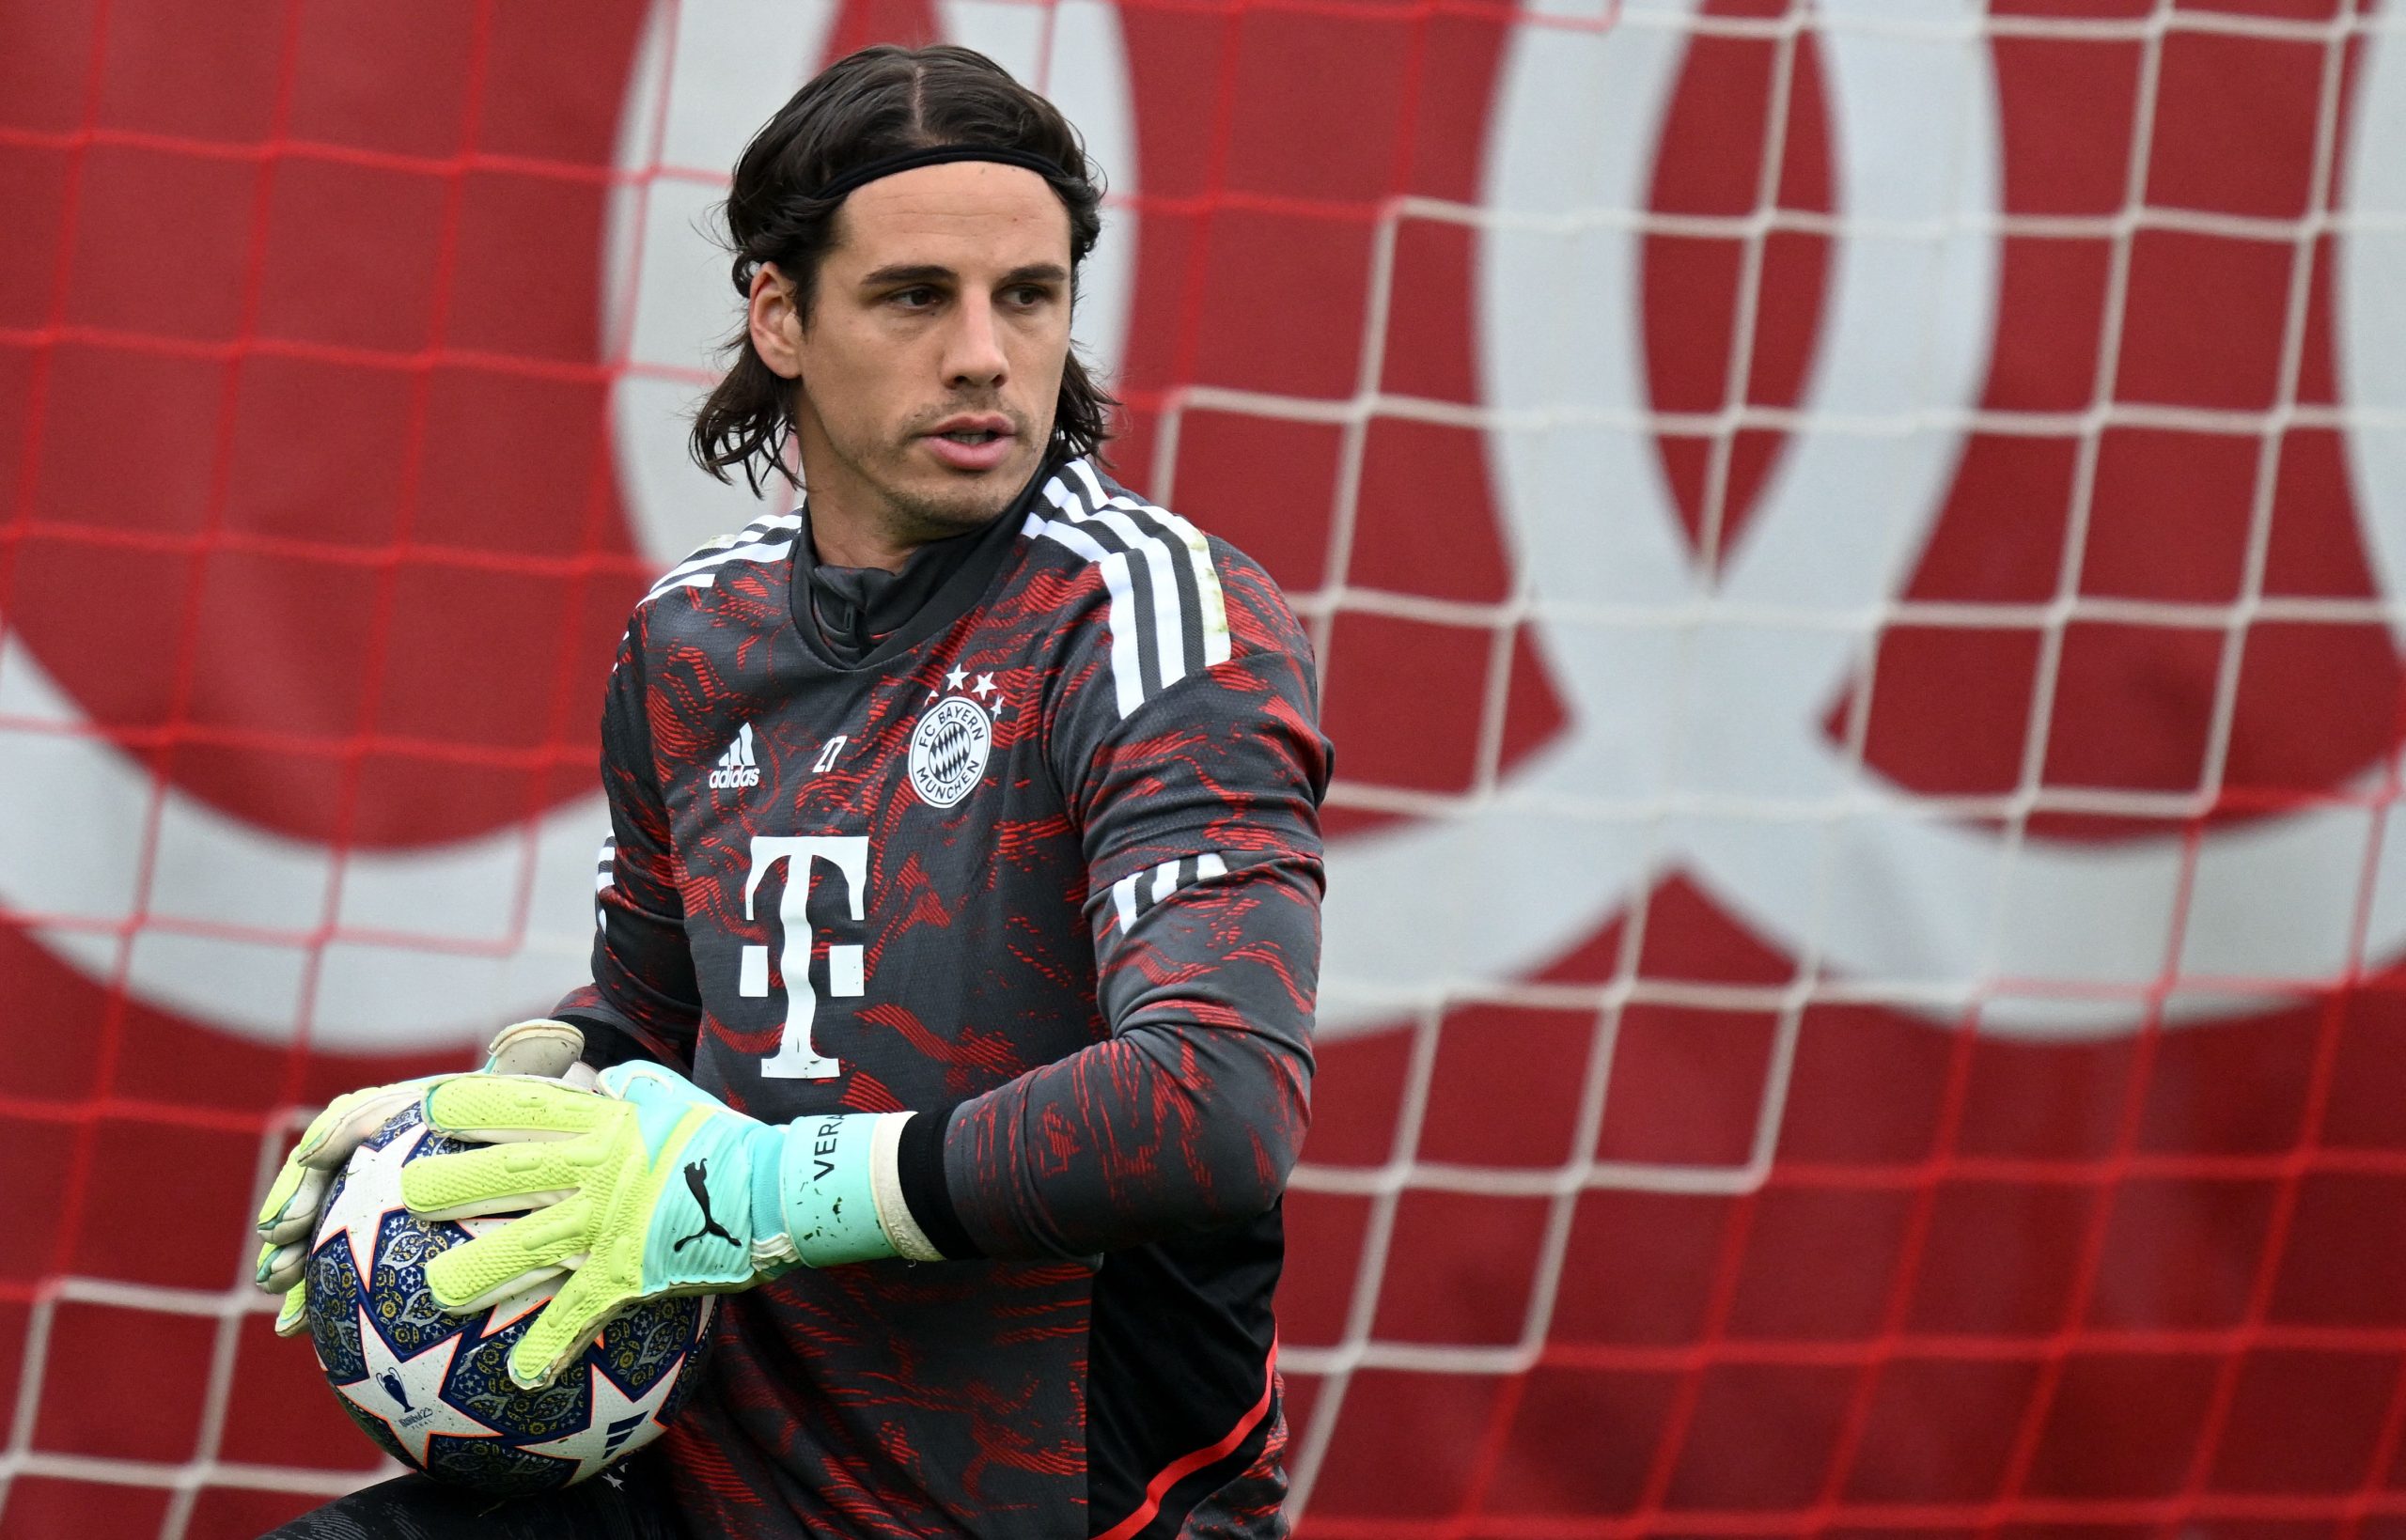 Sommer atuou pelo Bayern de Munique após lesão de Neuer (Foto: CHRISTOF STACHE/AFP via Getty Images)